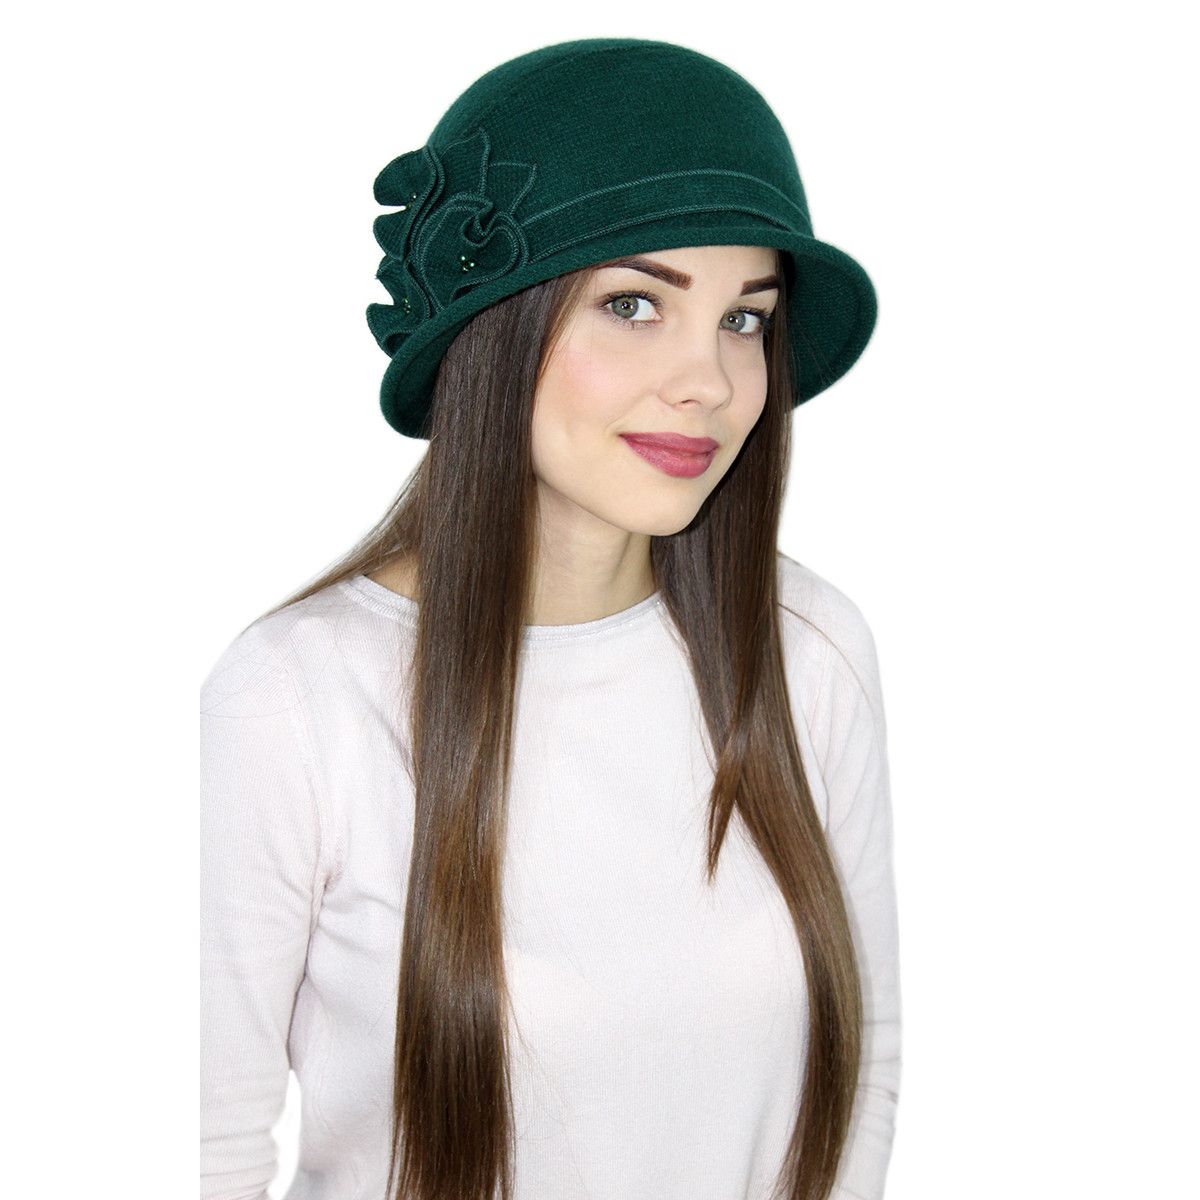 Купить шляпу в интернет магазине. Шляпка. Осенние головные уборы для женщин. Весенние головные уборы для женщин. Стильные шляпки.